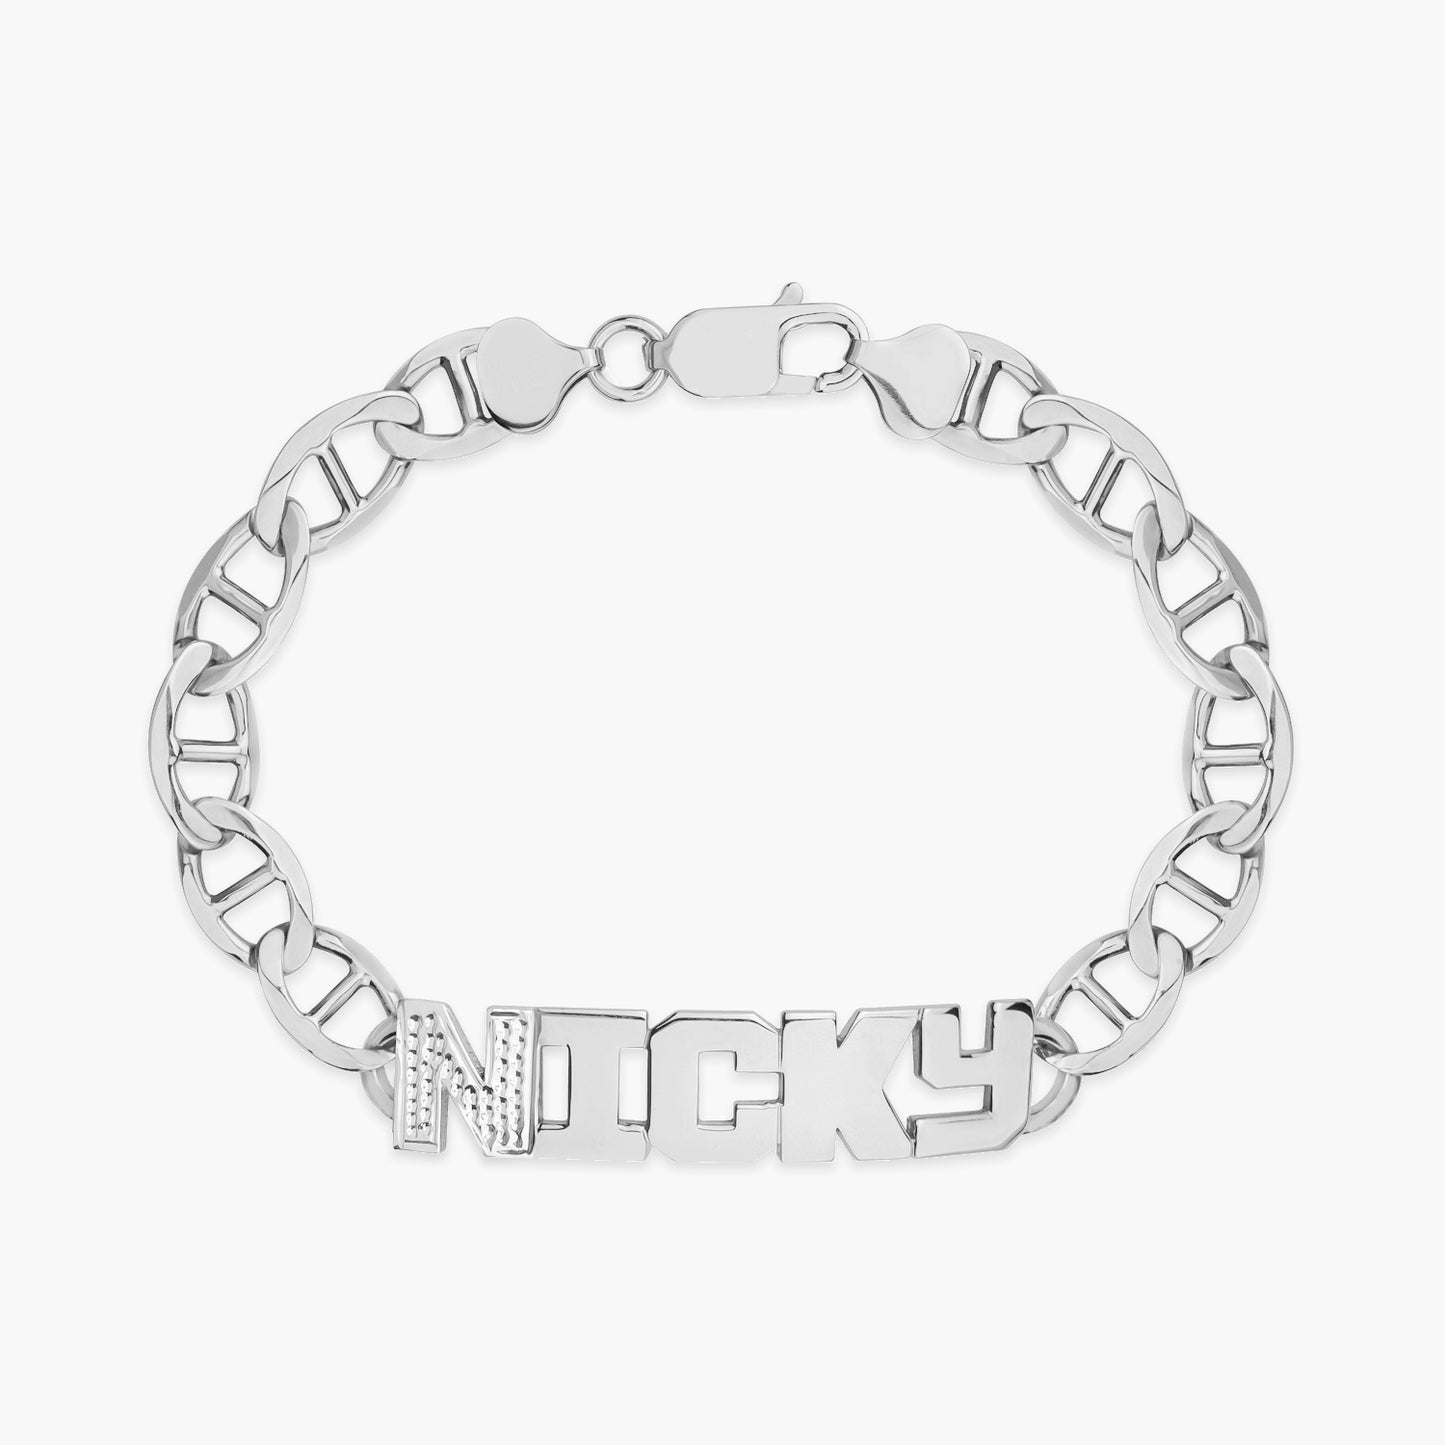 Iced Men's Name Bracelet